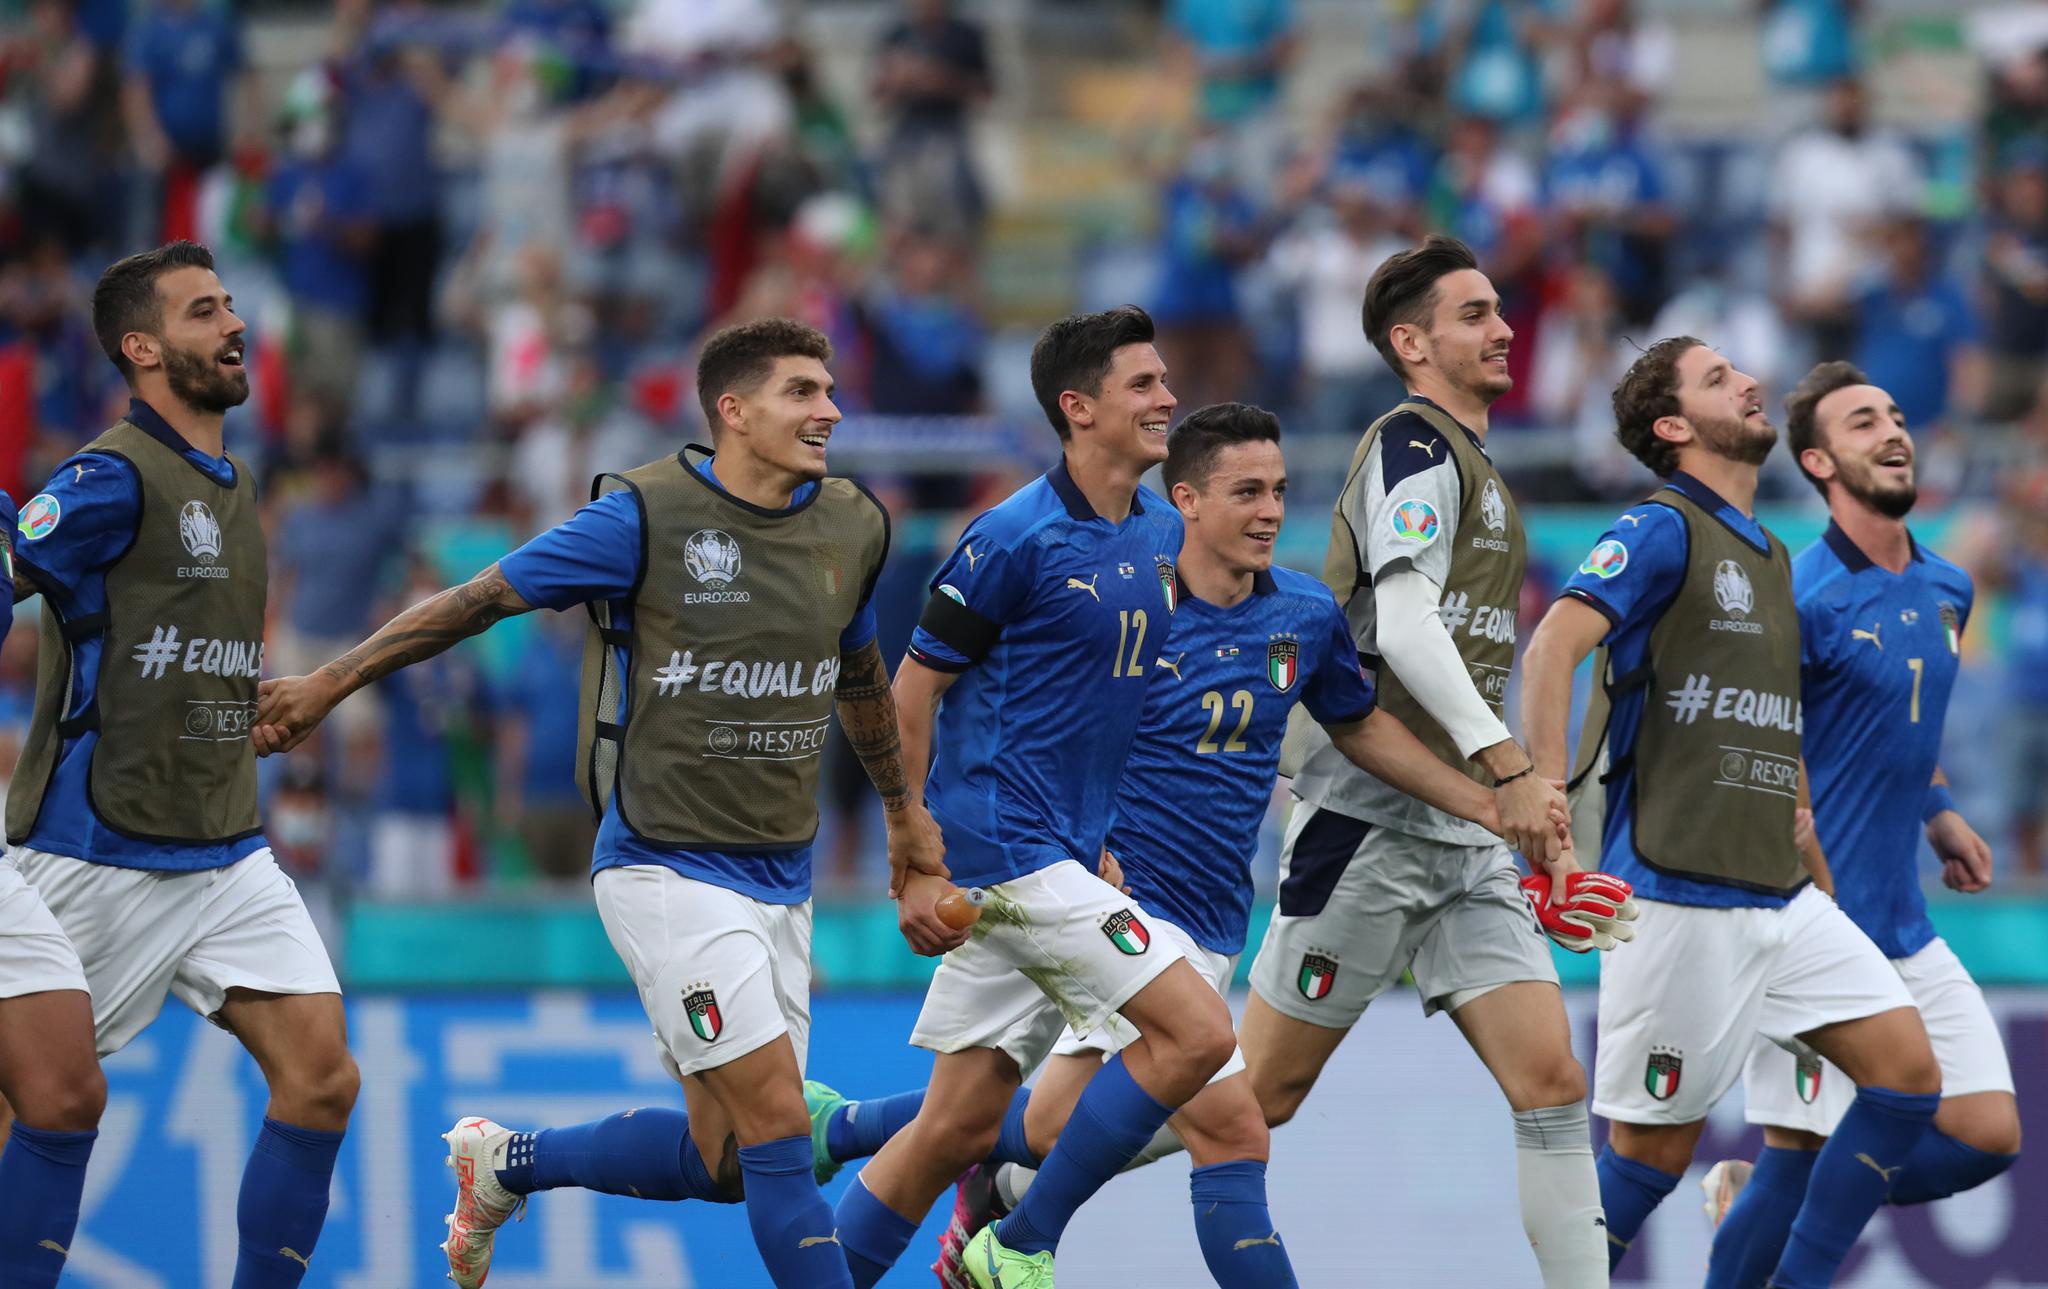 足球——欧锦赛:意大利战胜威尔士